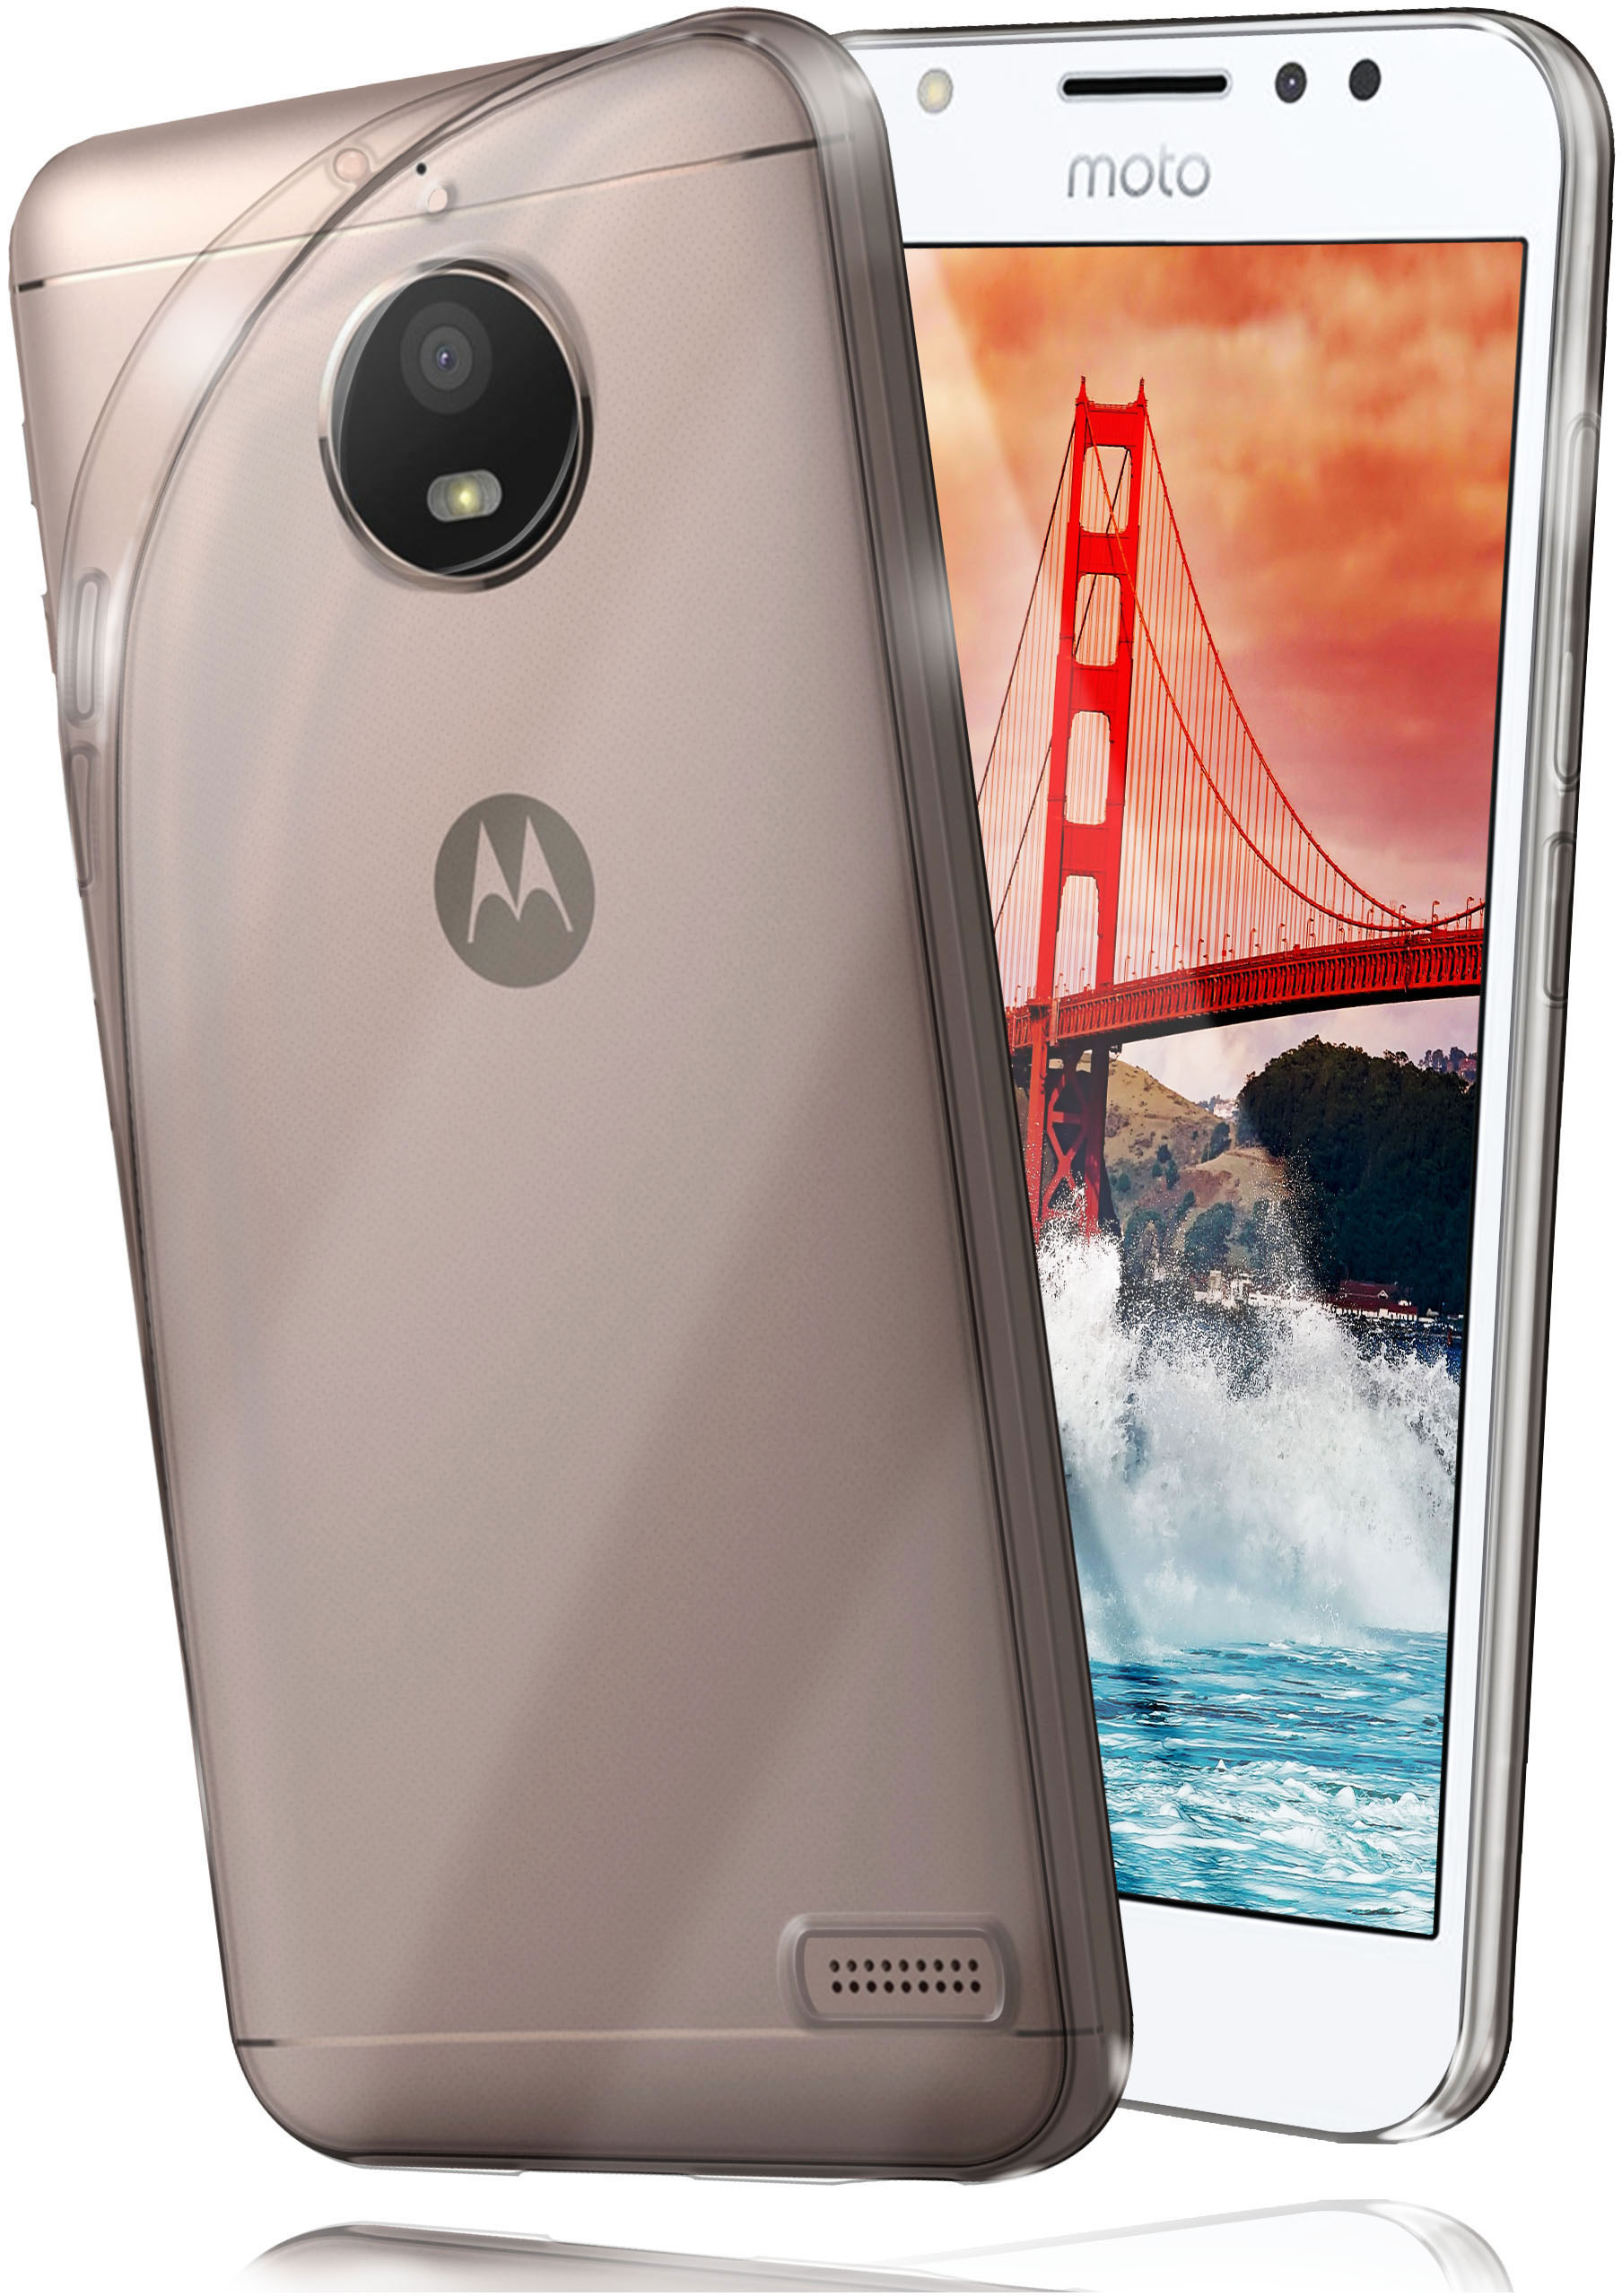 Crystal-Clear Motorola, Moto MOEX E4, Aero Case, Backcover,